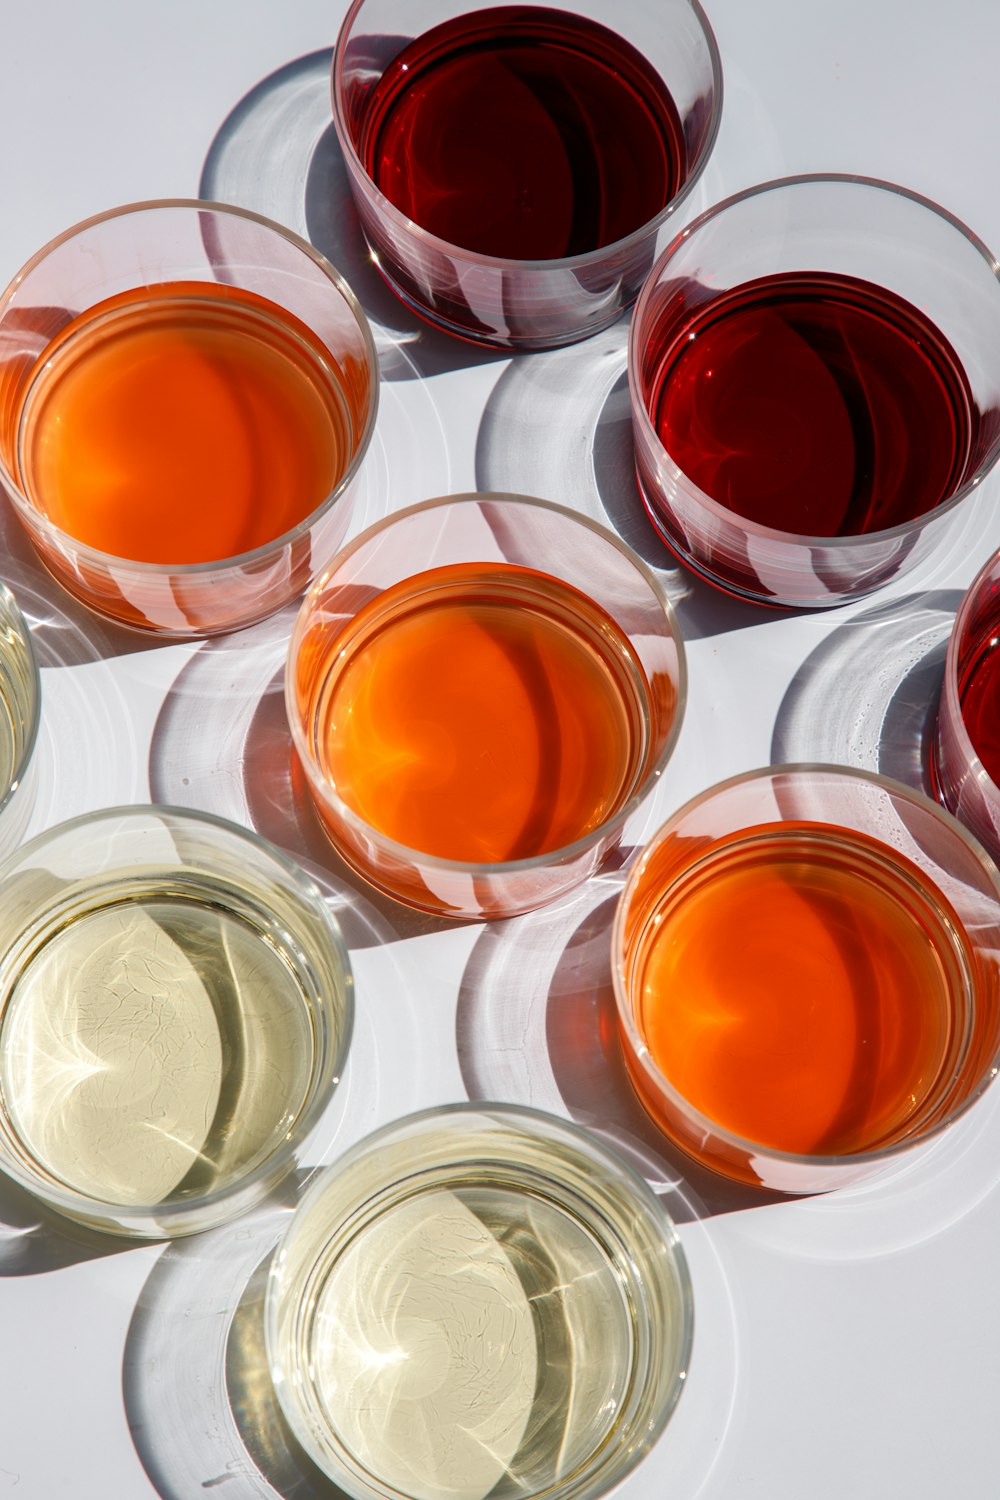 copo transparente com líquido laranja